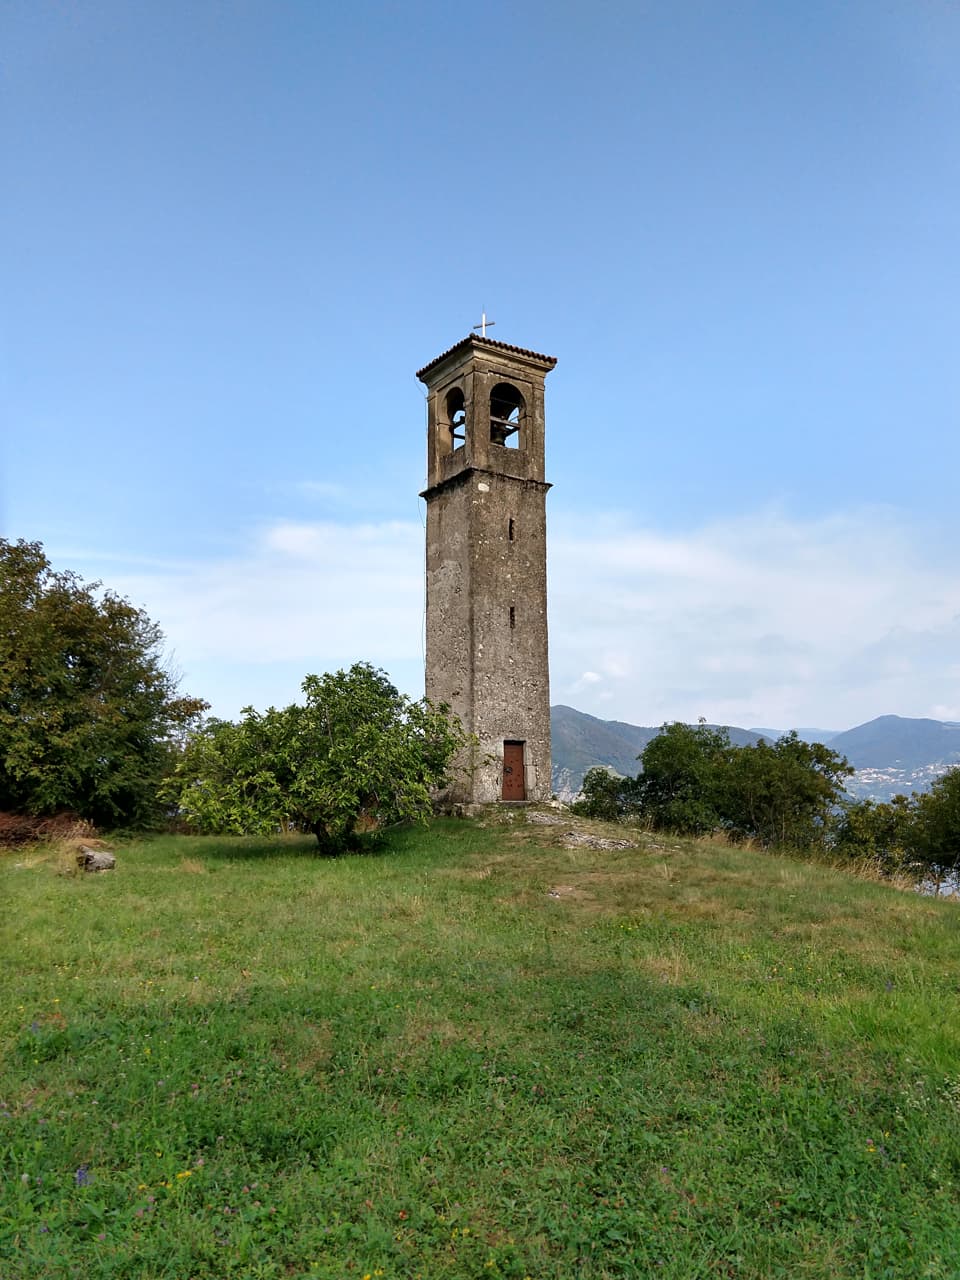 Ecco l'isolato e caratteristico campanile del Santuario di San Fermo